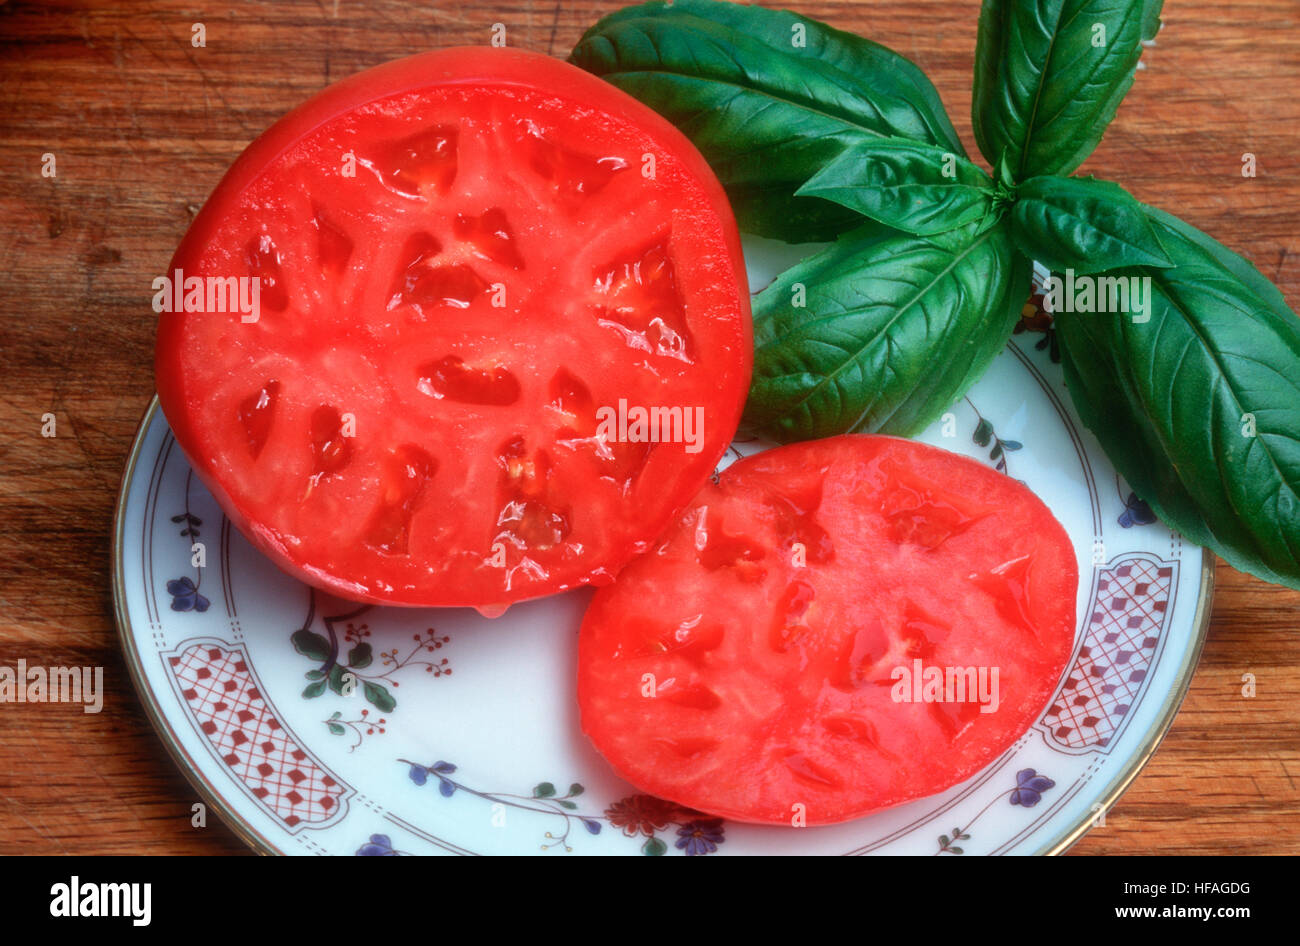 Tomaten in Scheiben geschnitten auf Platte mit Basilikum Kraut öffnen, kernlose Beefsteak Gemüse frisch geschnitten Reife rote gerade gepflückten verzehrfertige gesund Stockfoto